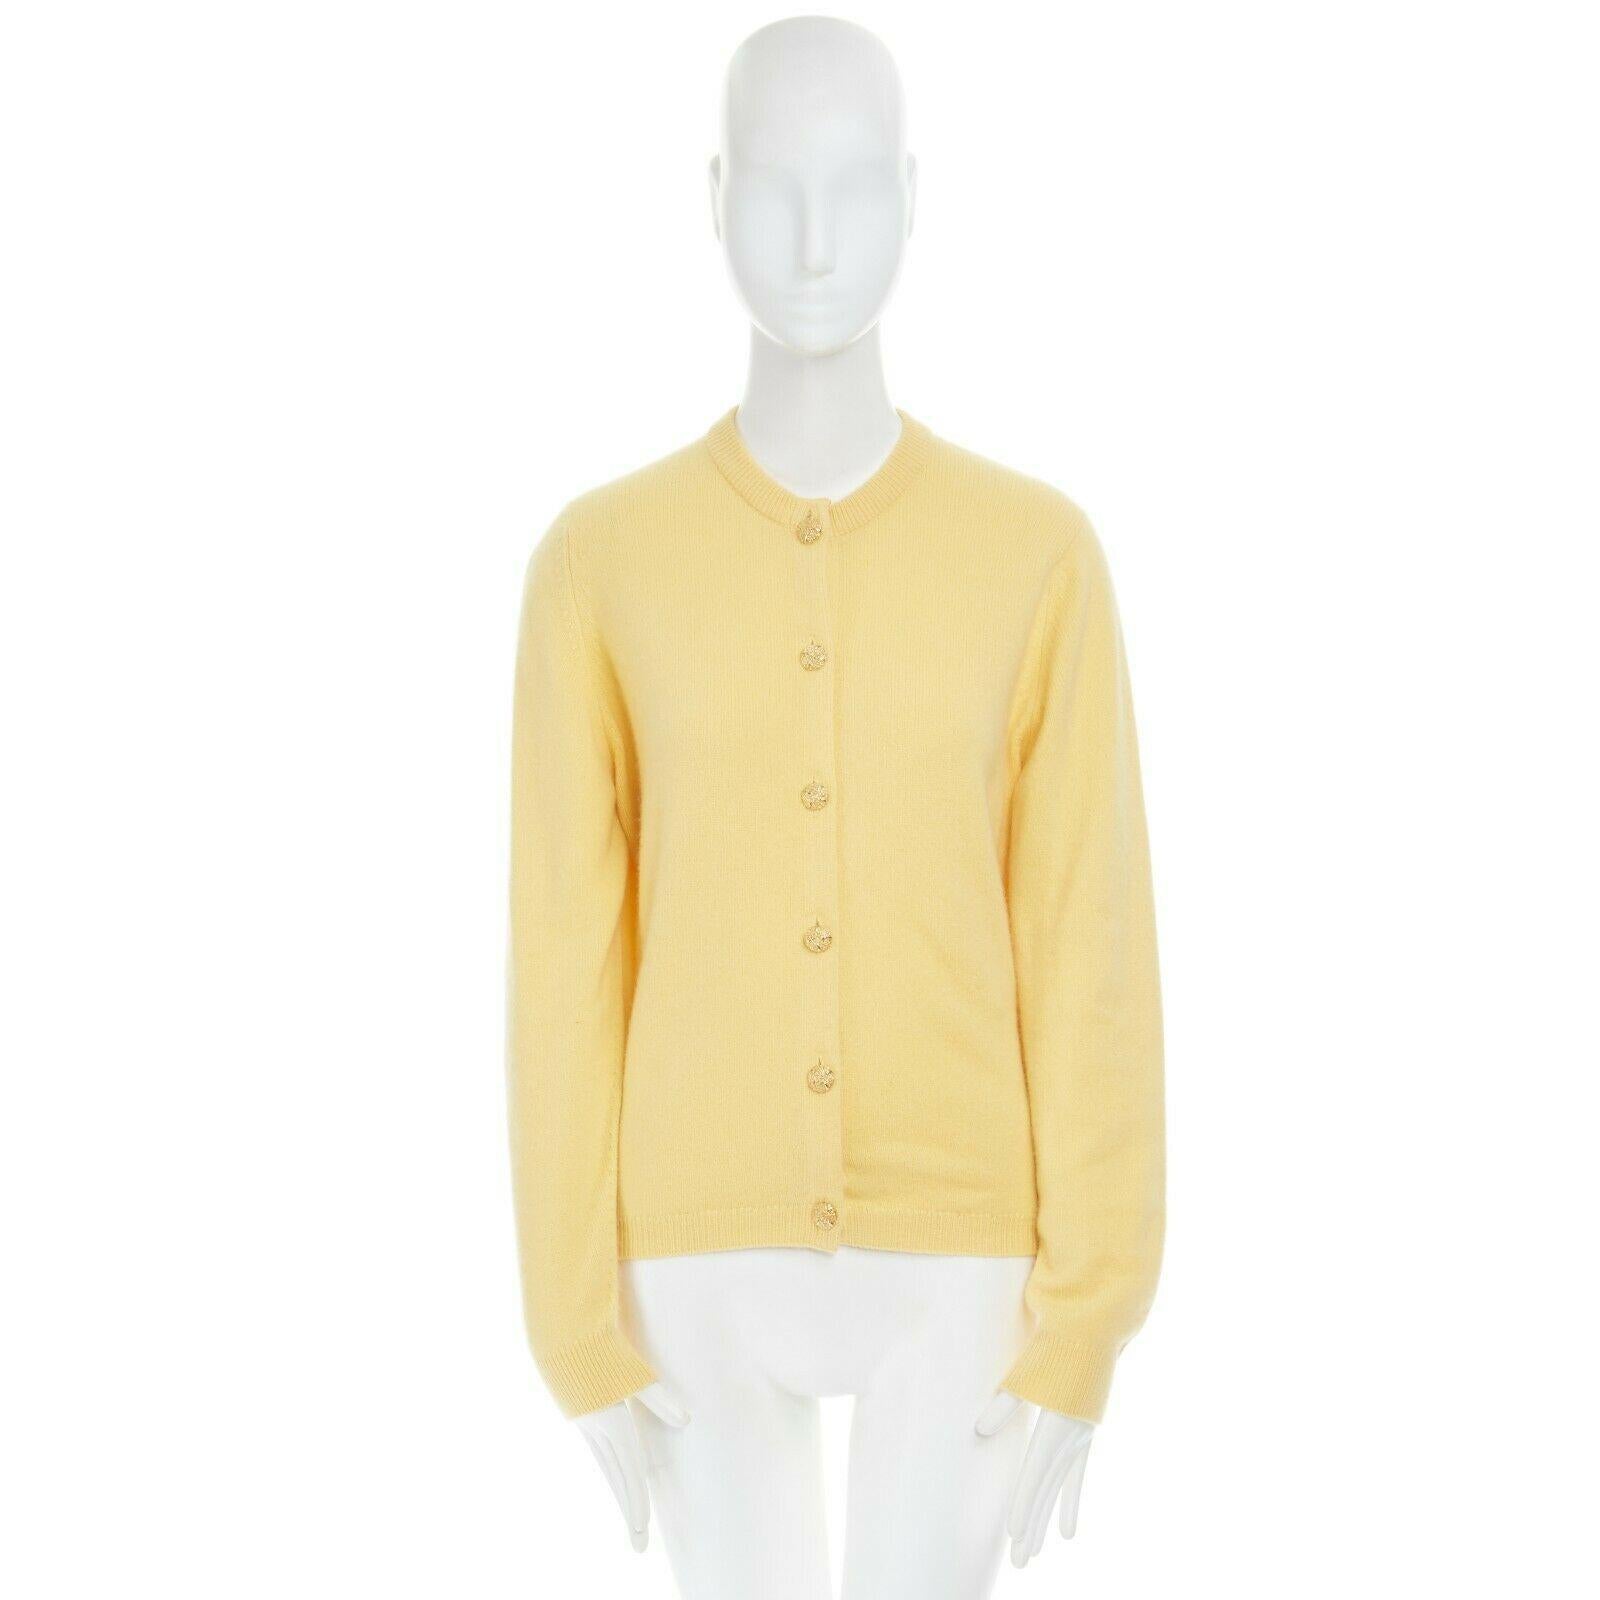 yellow cardigan sweater